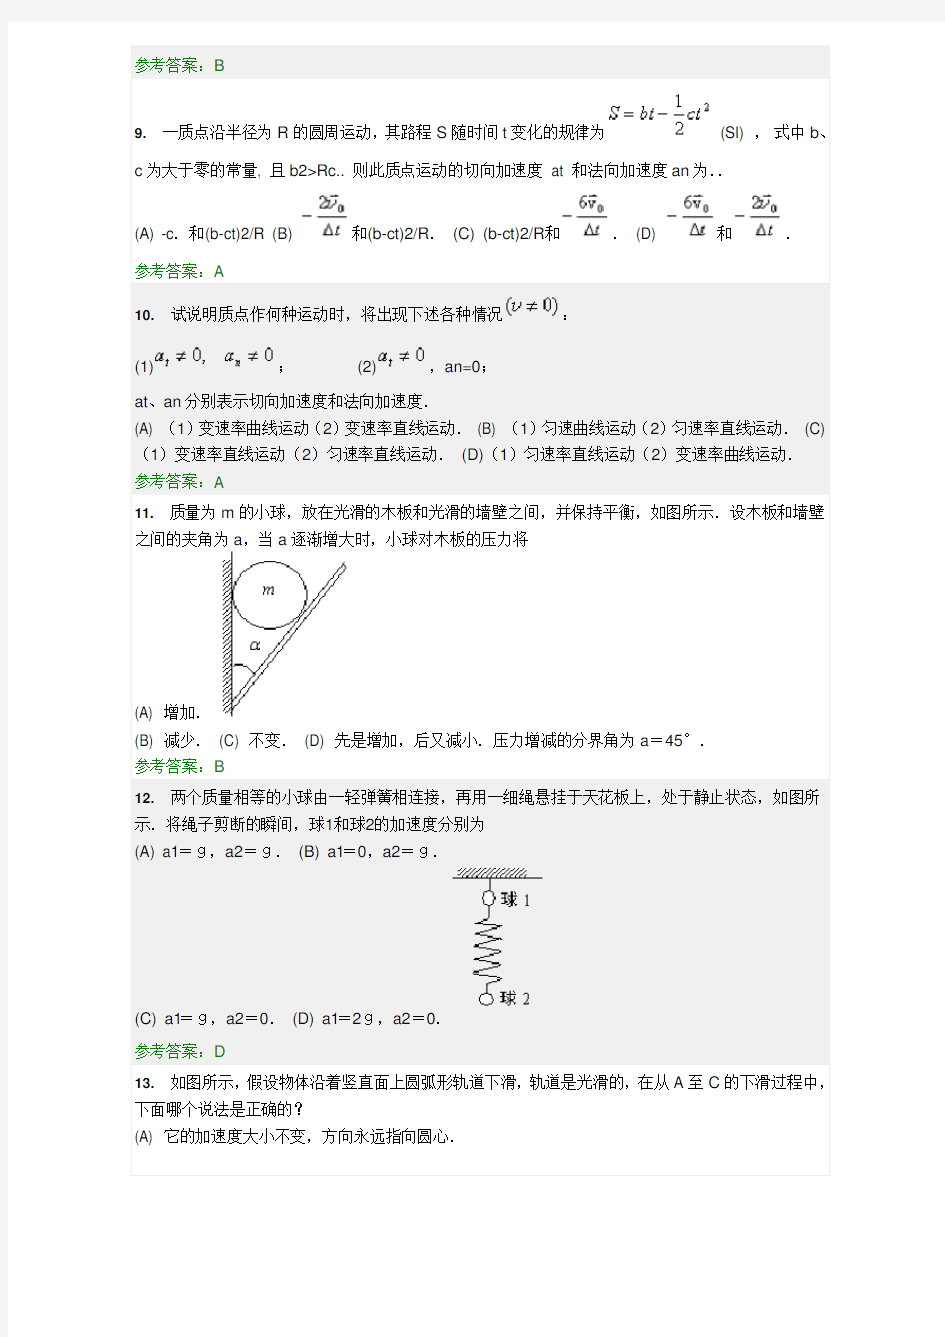 华南理工大学网络教育平台 大学物理 随堂练习